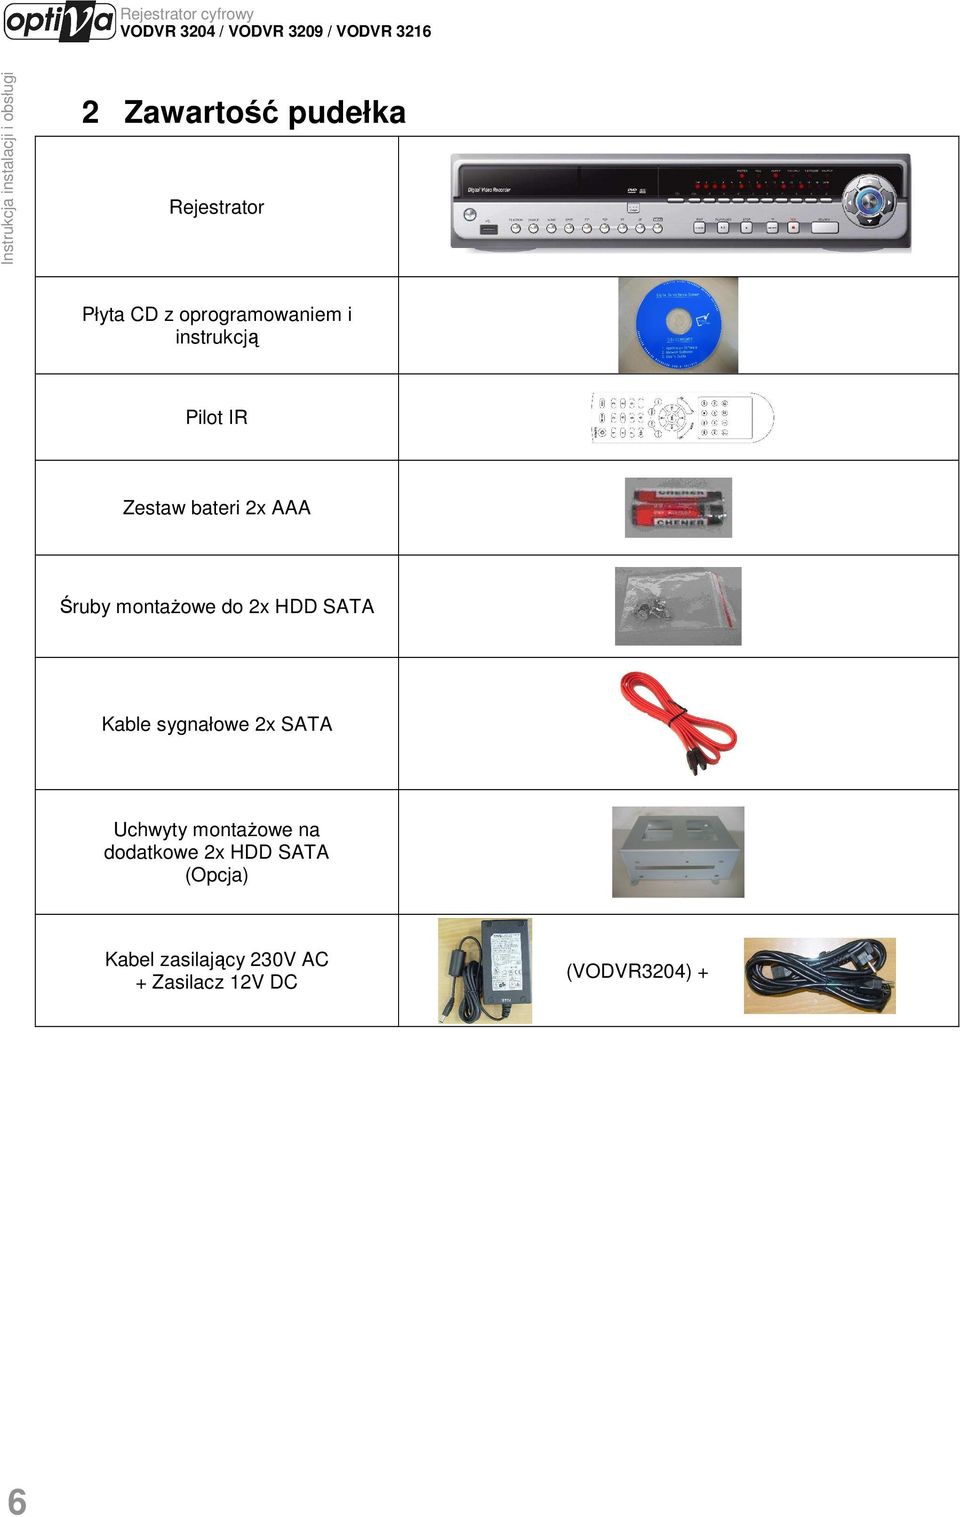 SATA Kable sygnałowe 2x SATA Uchwyty montaŝowe na dodatkowe 2x HDD